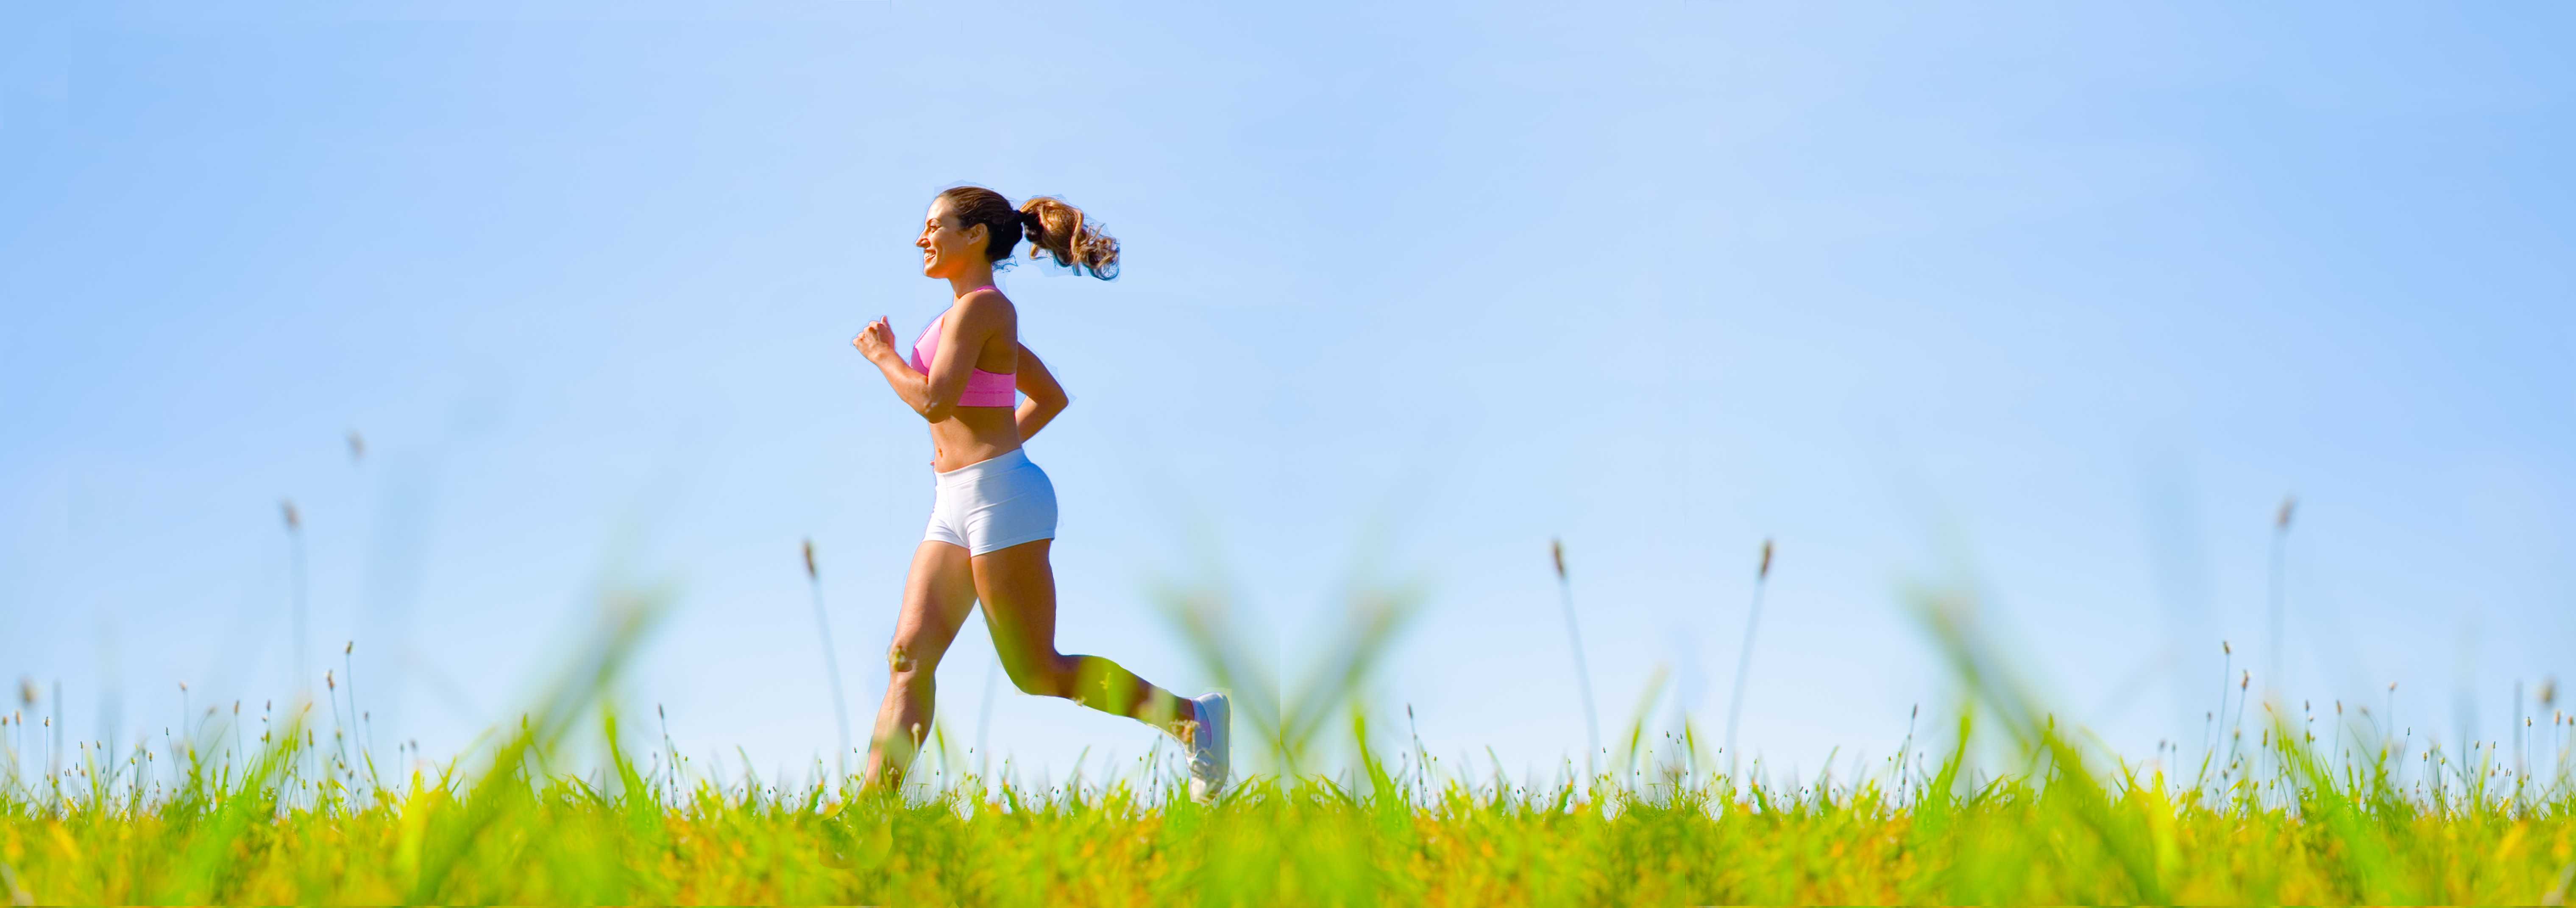 woman jogging across a field